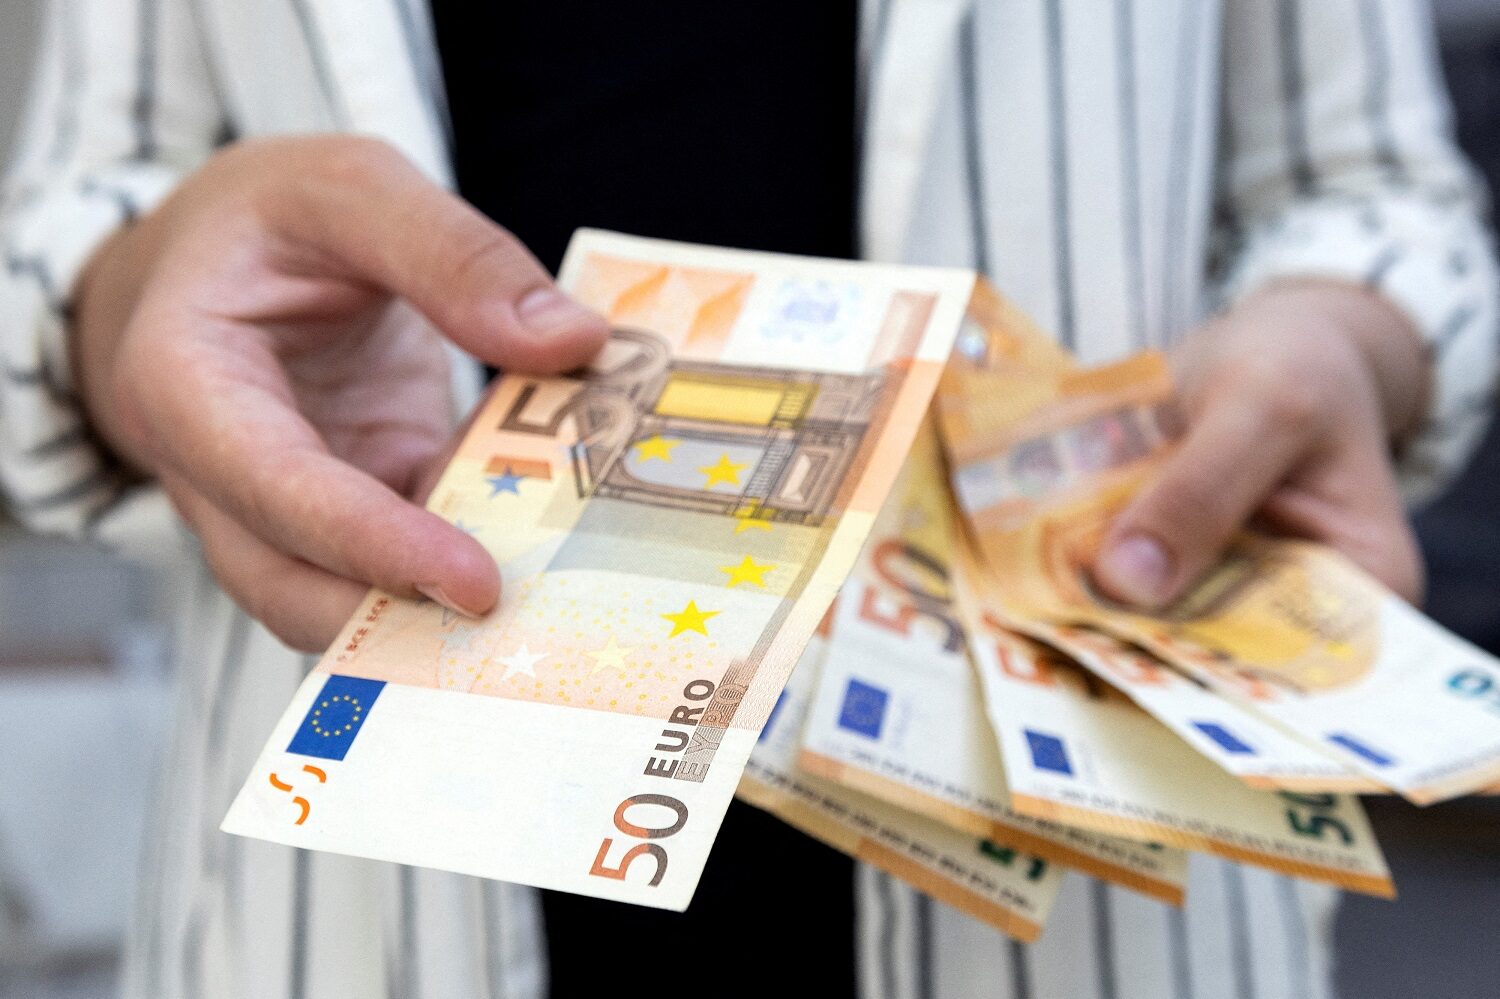 หวั่นเศรษฐกิจยุโรปถดถอย เงินยูโรร่วงต่ำสุดรอบ 20 ปี  มูลค่าเกือบเท่าดอลลาร์สหรัฐ